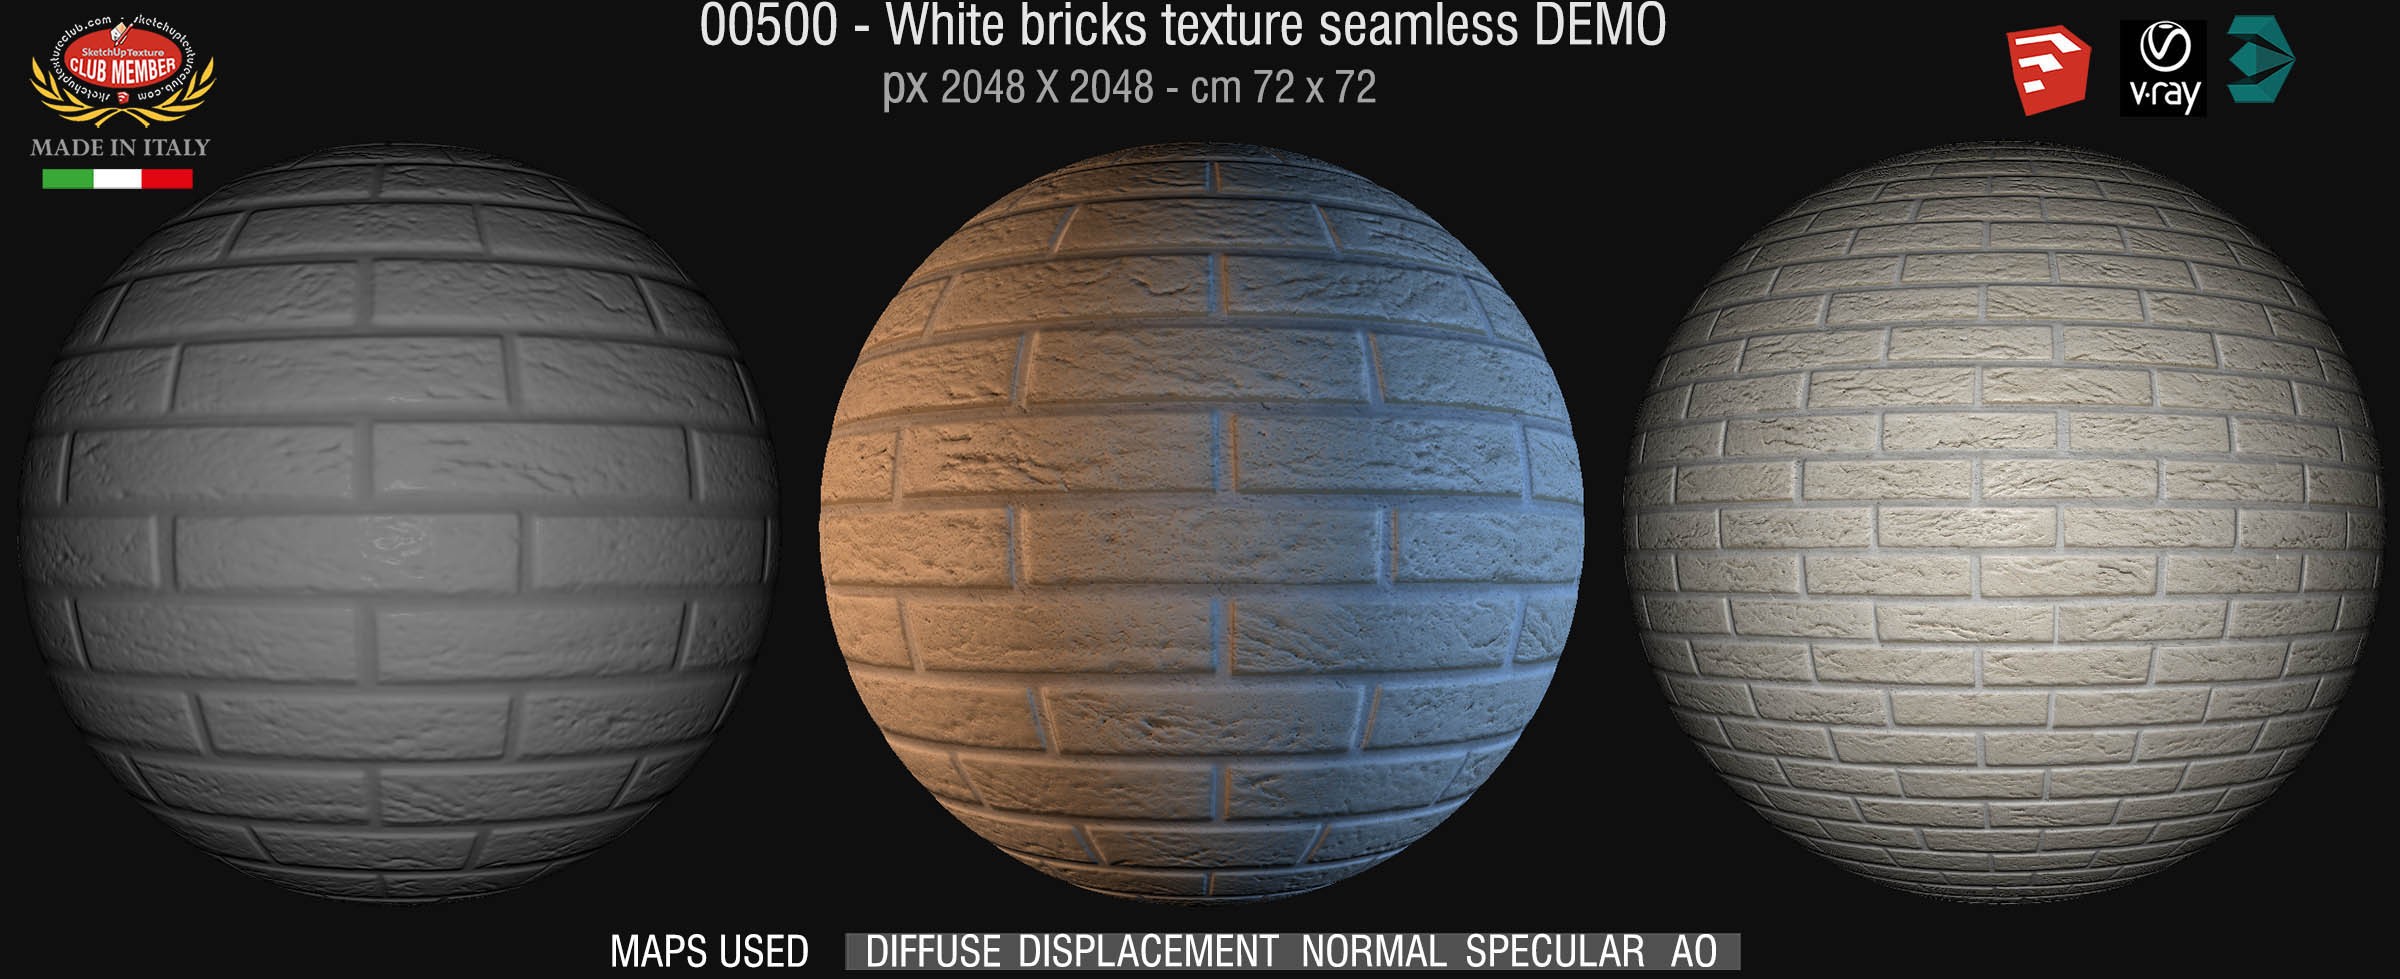 00500 White bricks texture seamless + maps DEMO